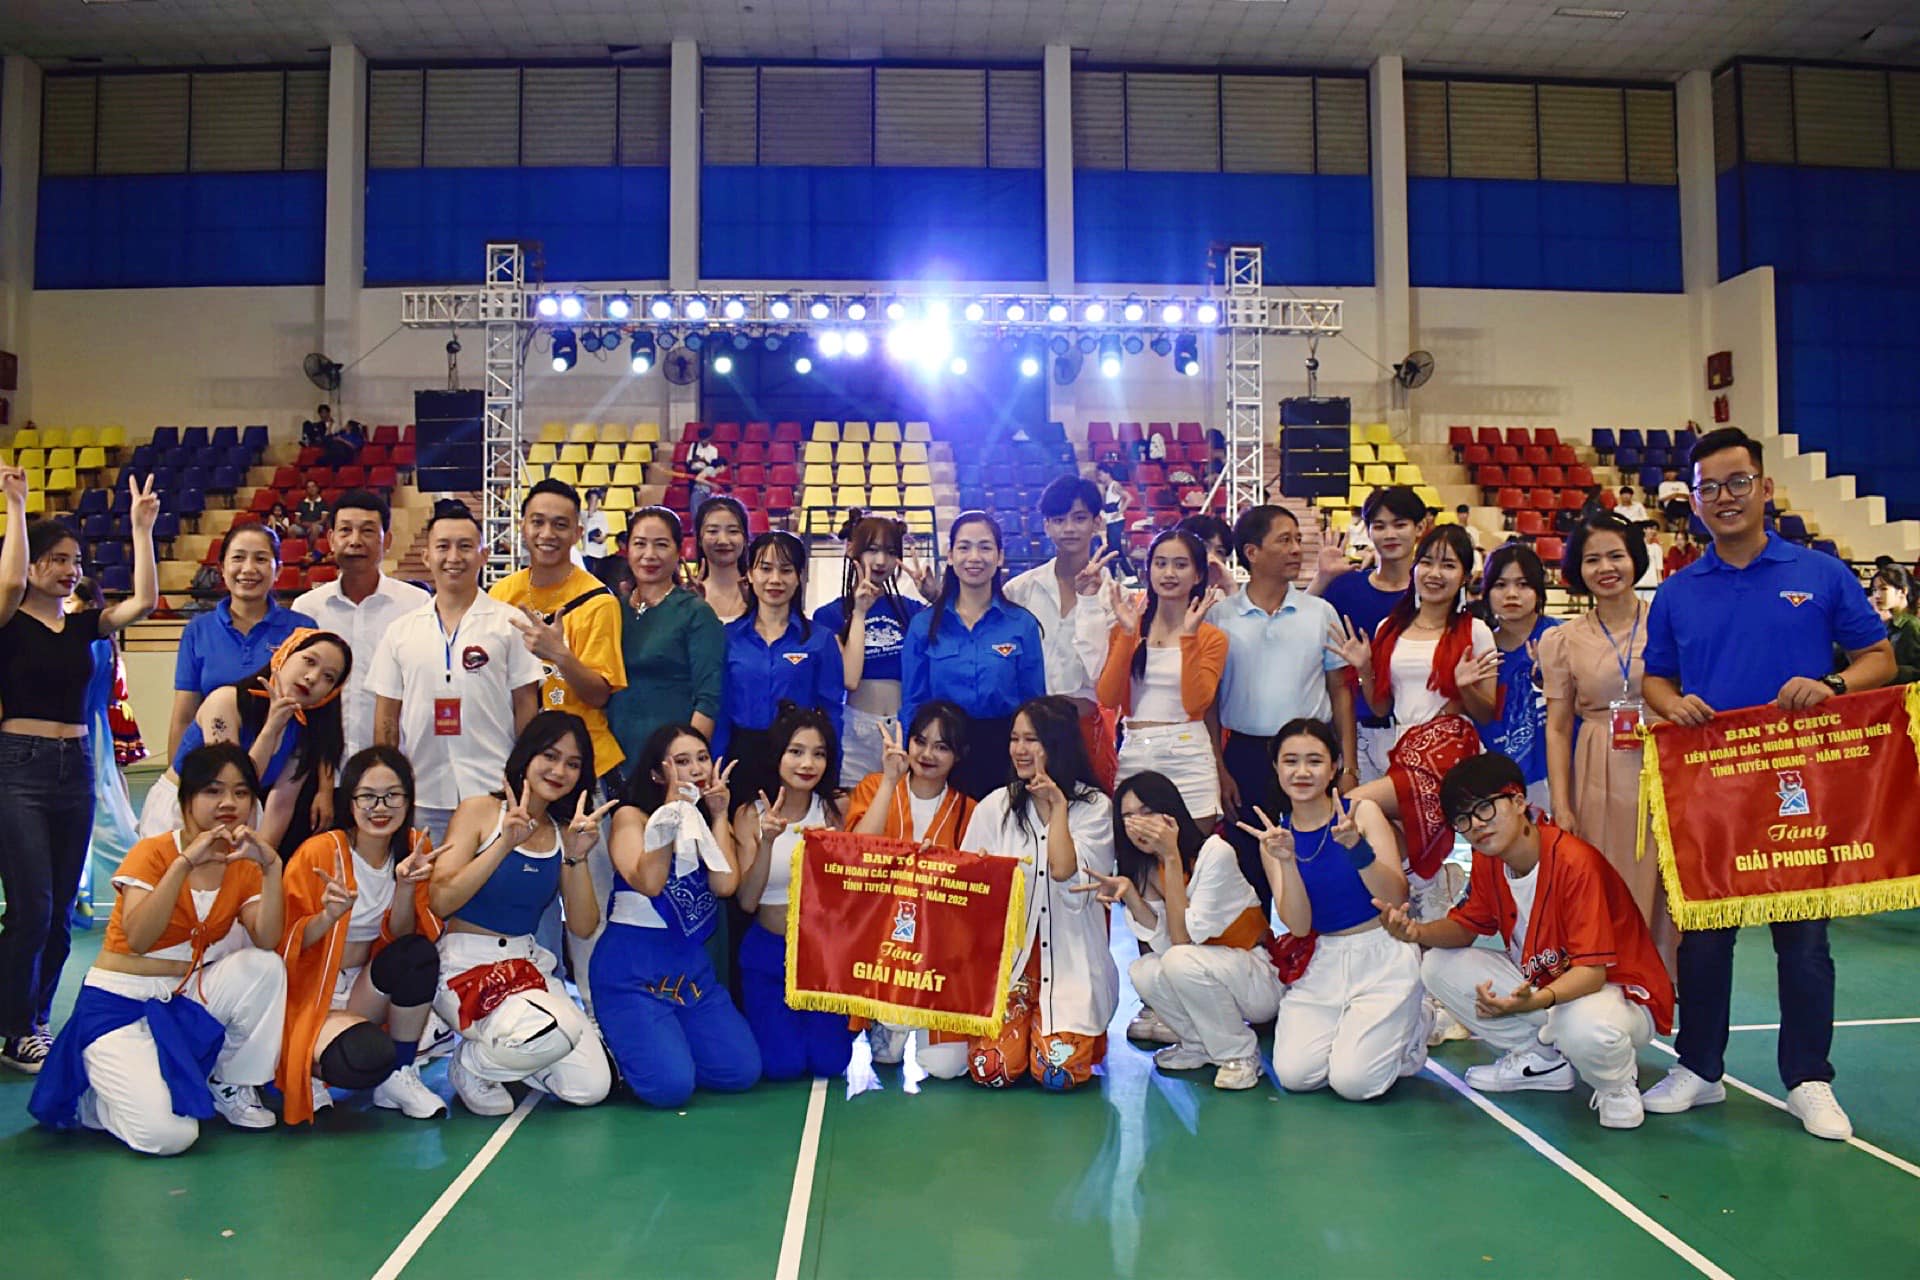 Bùng nổ sức trẻ tại Liên hoan các nhóm nhảy thanh niên tỉnh Tuyên Quang năm 2022